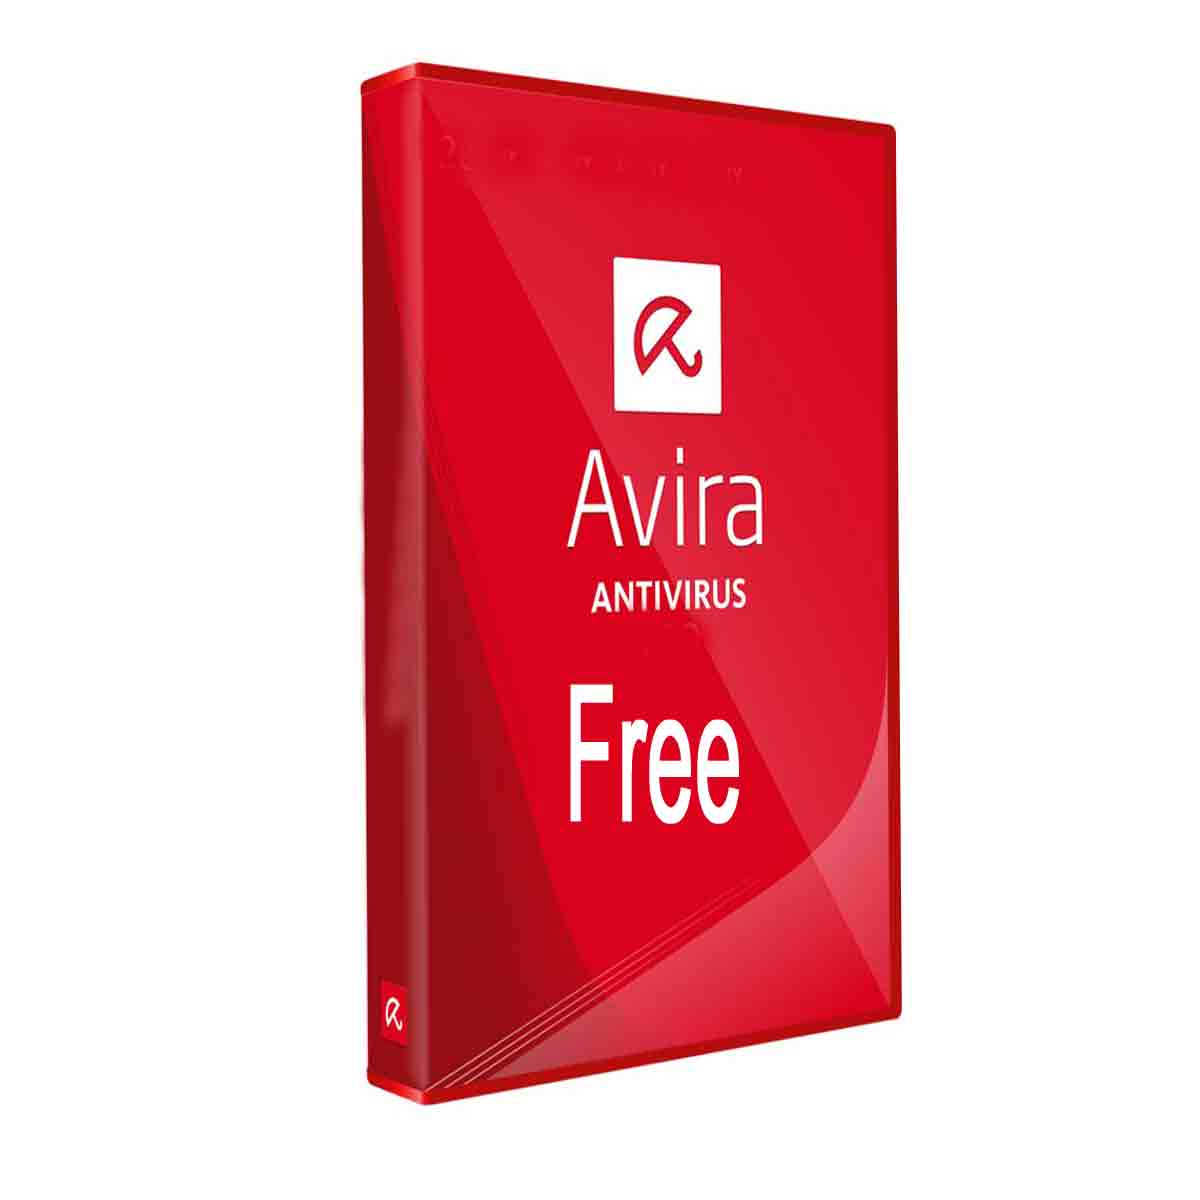 Buy Avira Antivirus Free License Key - 0800-090-3222 - Avira Serial Key